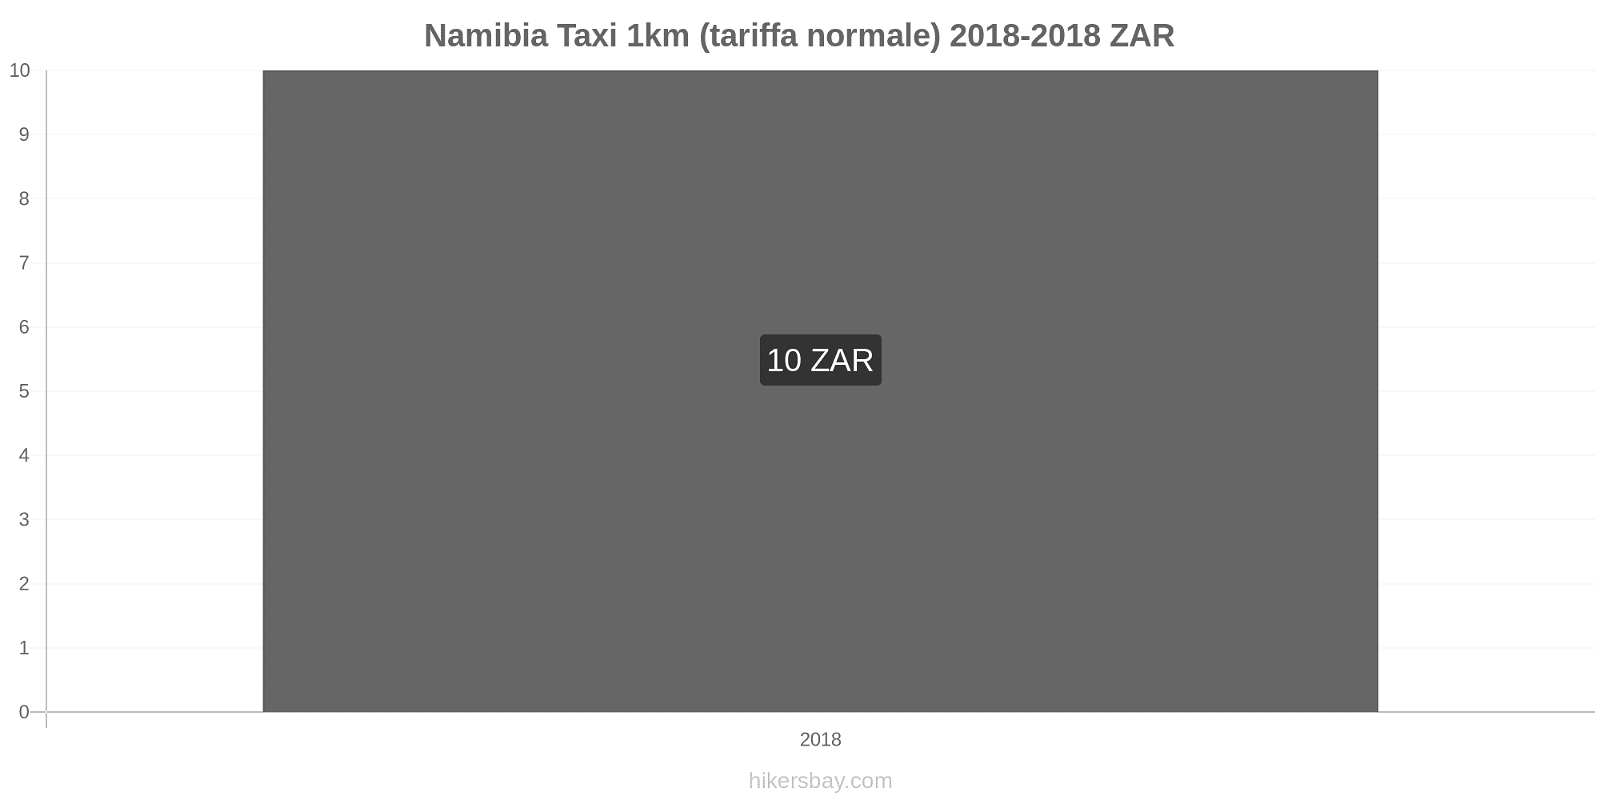 Namibia cambi di prezzo Taxi 1km (tariffa normale) hikersbay.com